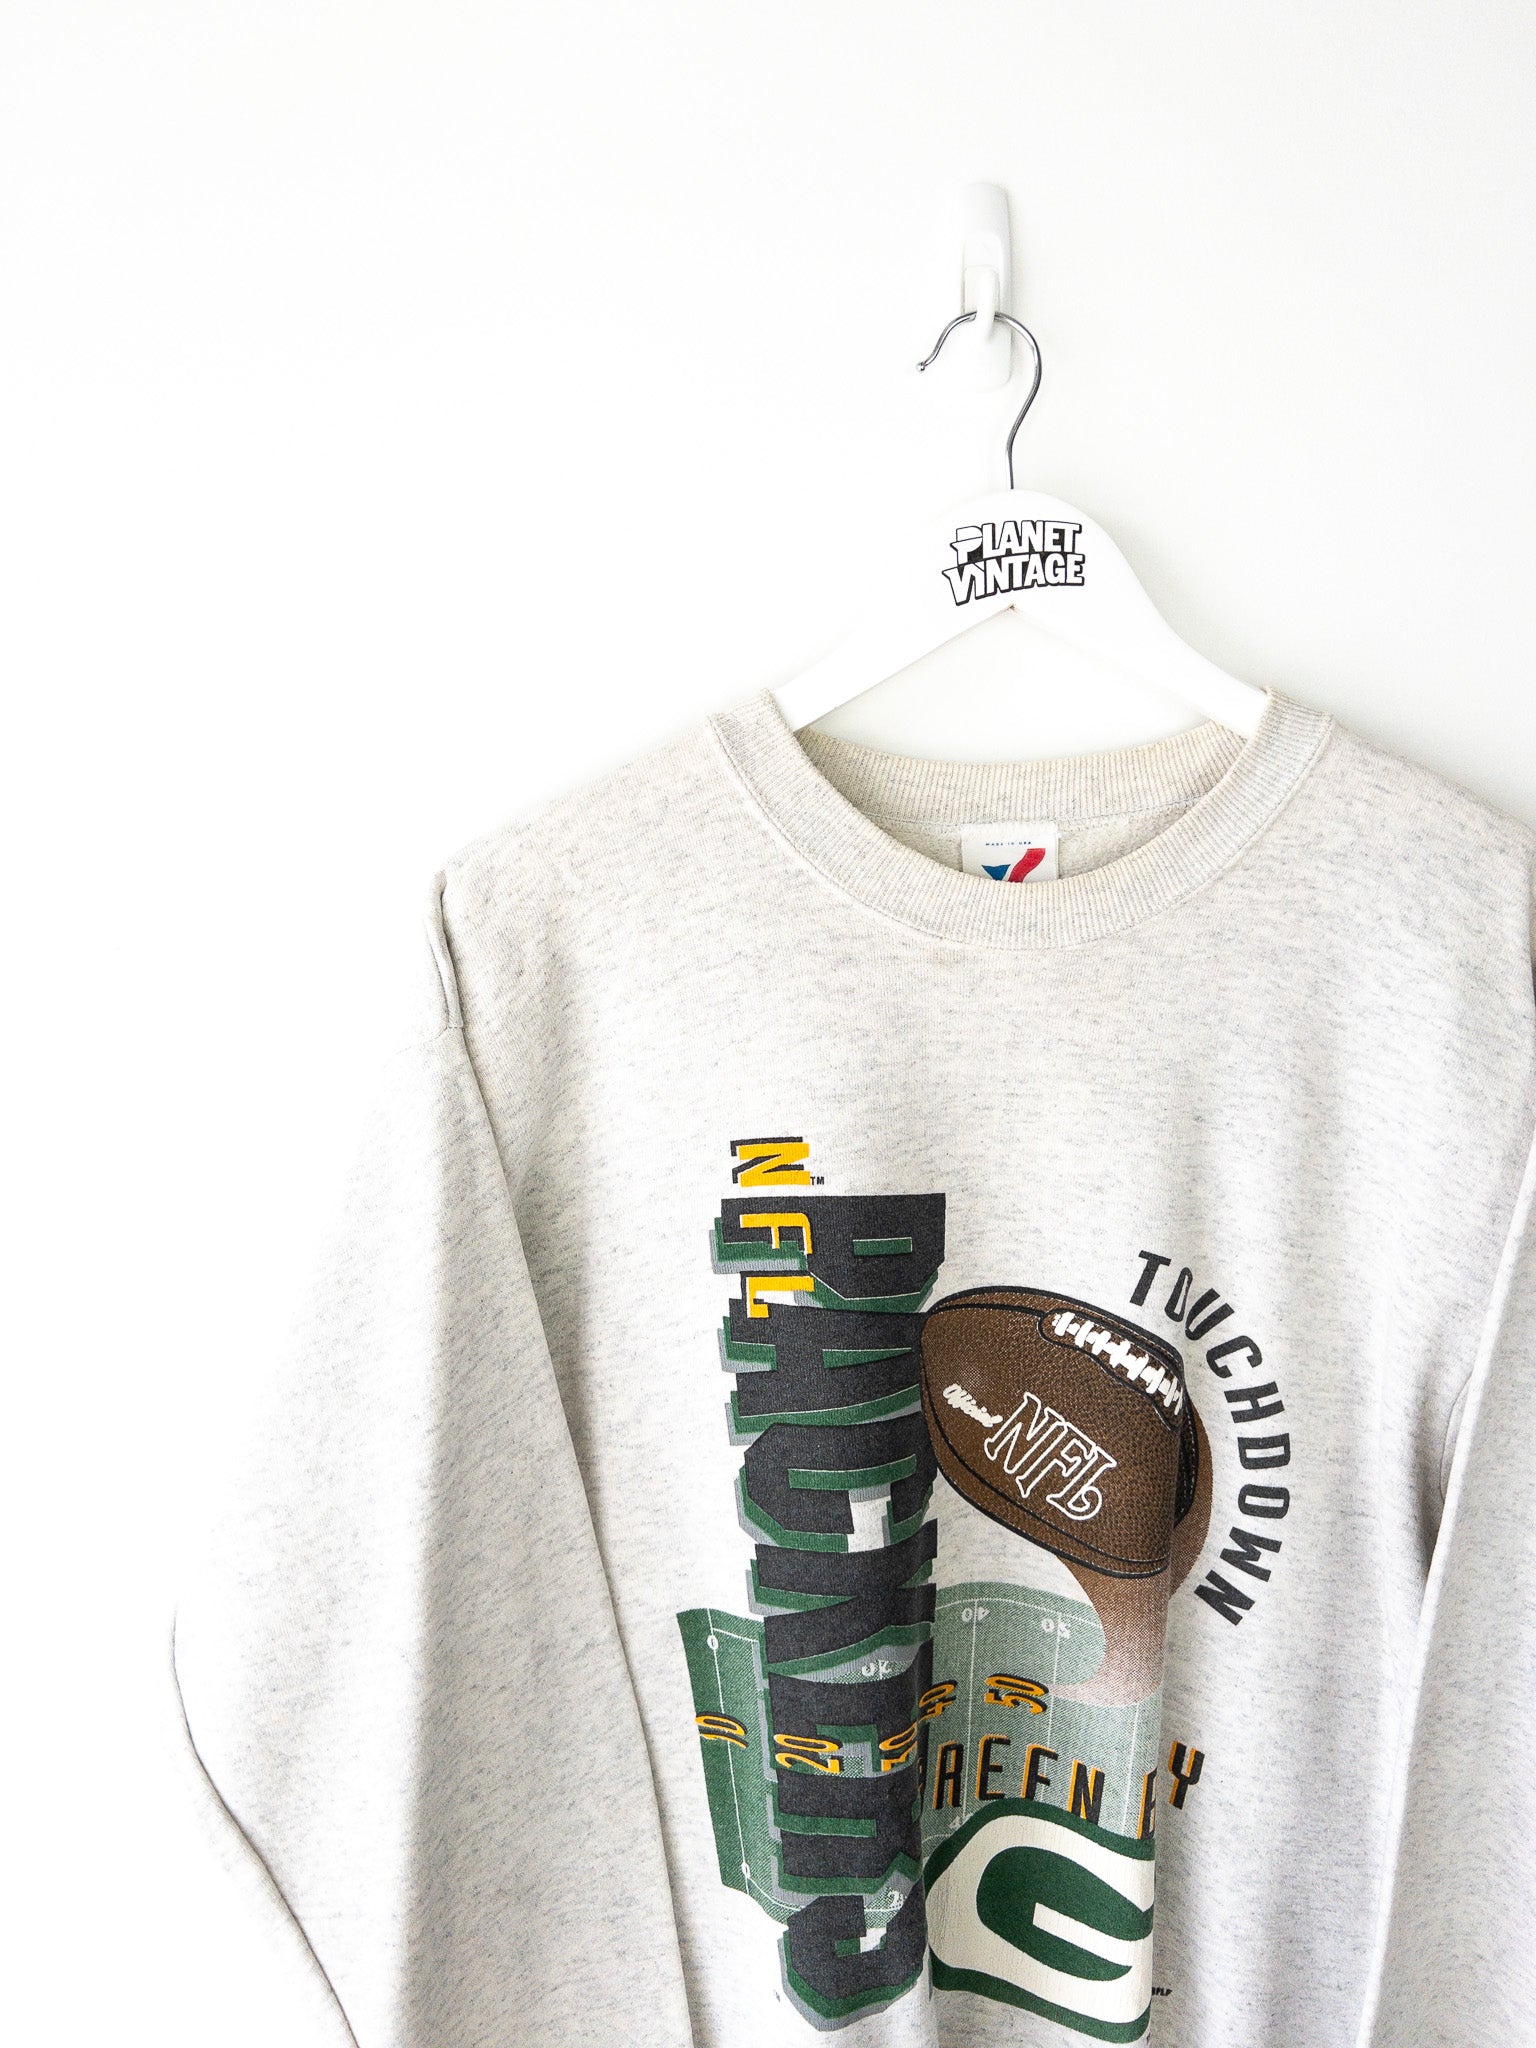 Vintage Green Bay Packers 1998 Sweatshirt (L)